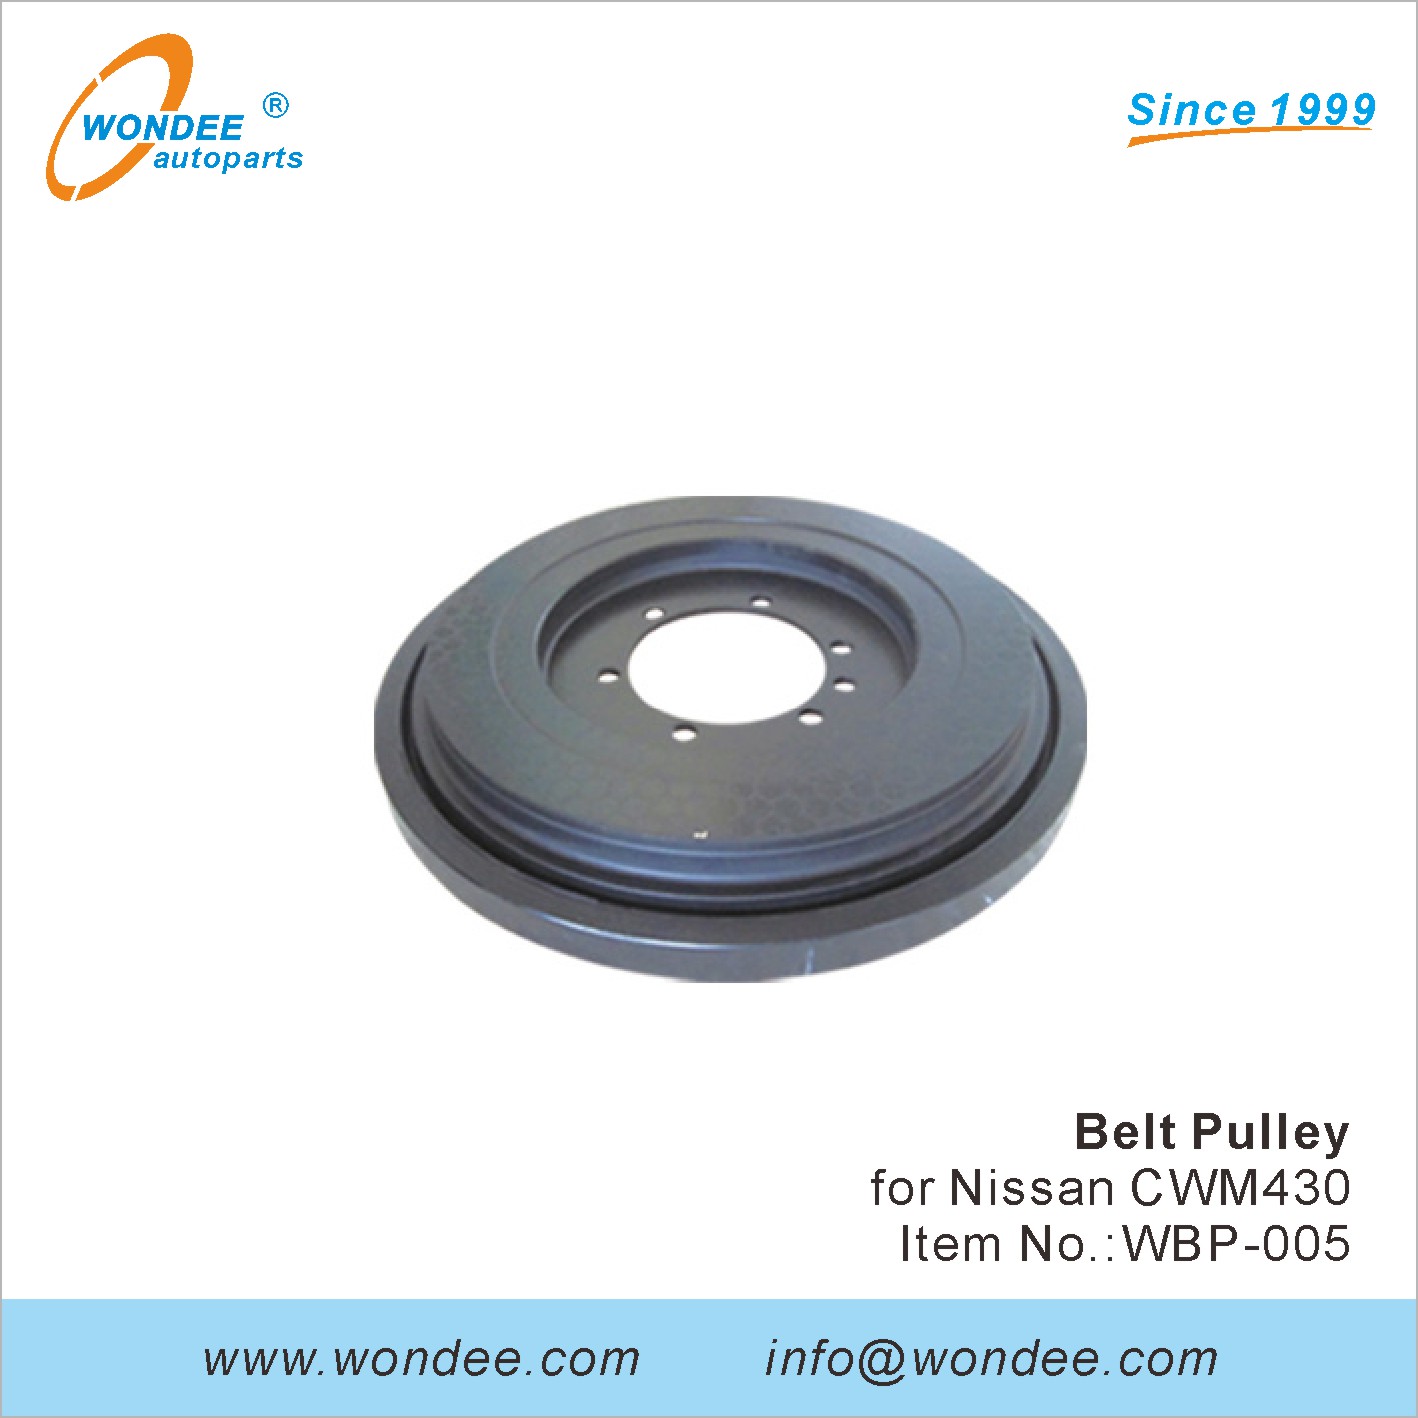 WONDEE Belt Pulley (5)